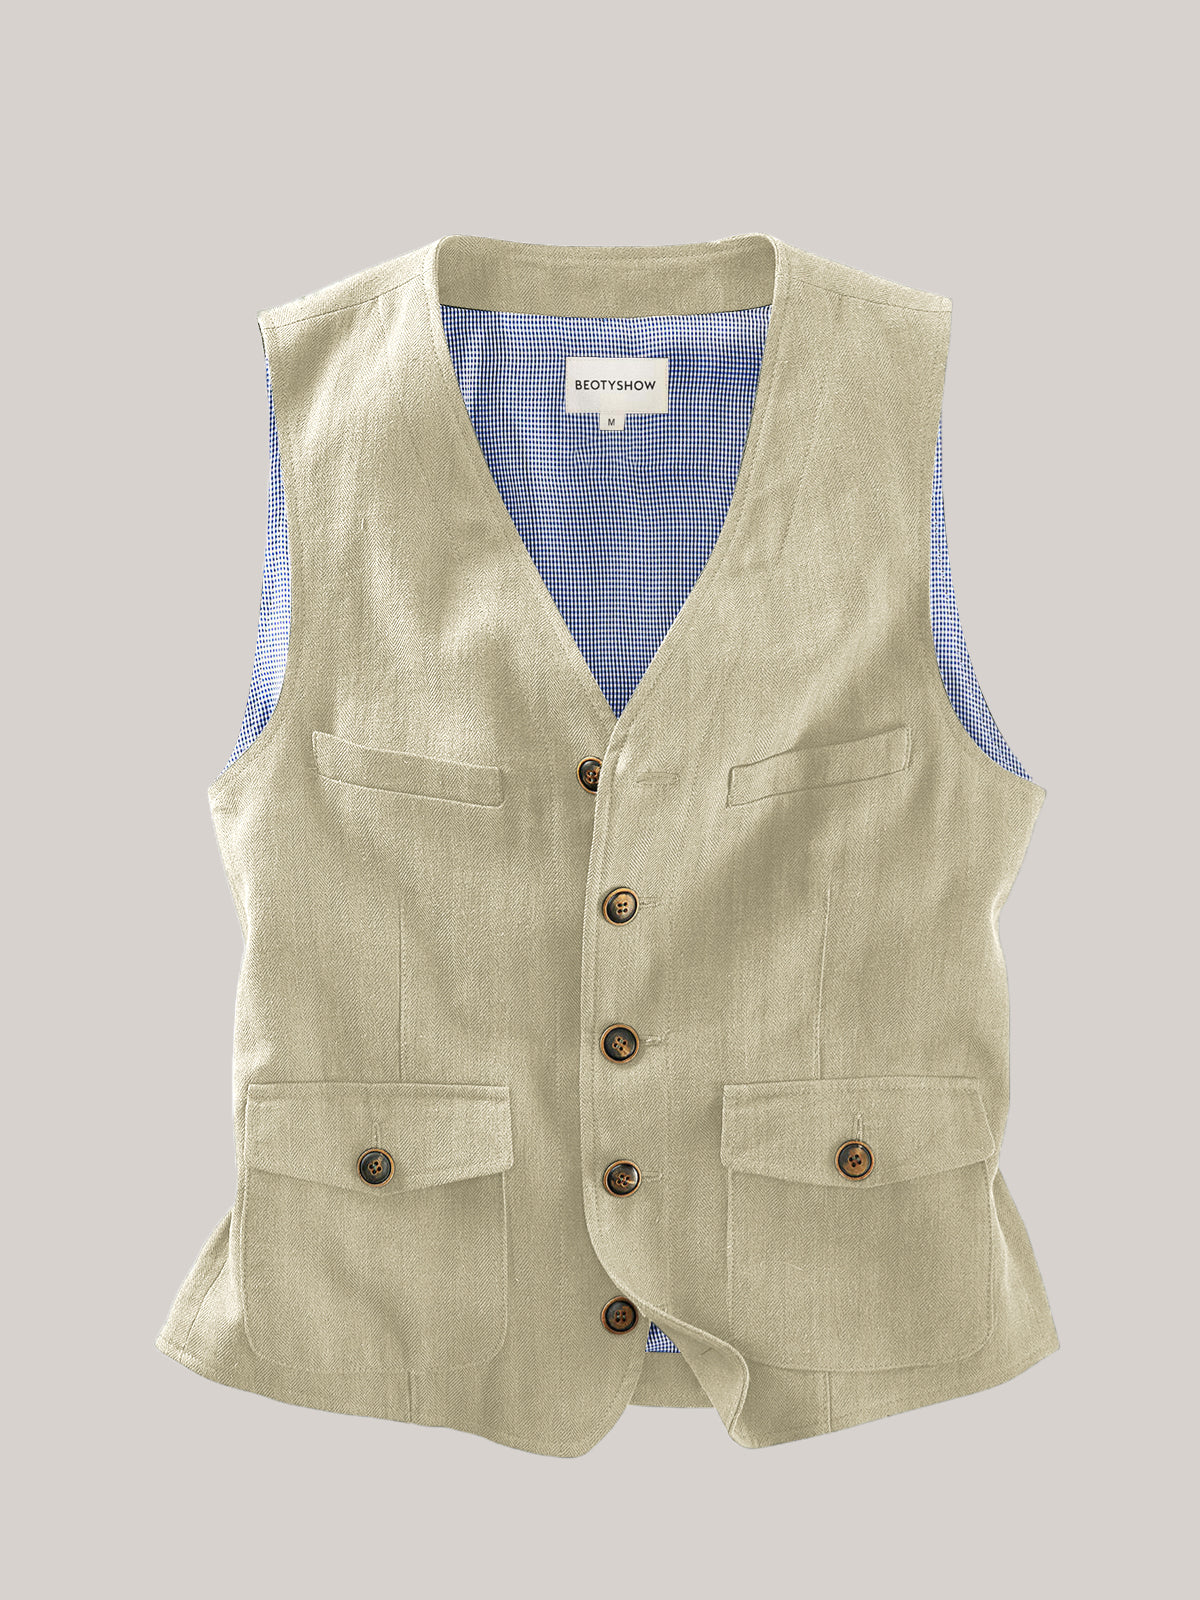 Linen Cotton Stripes Men's Casual Vest - Beotyshow Vest – BEOTYSHOW